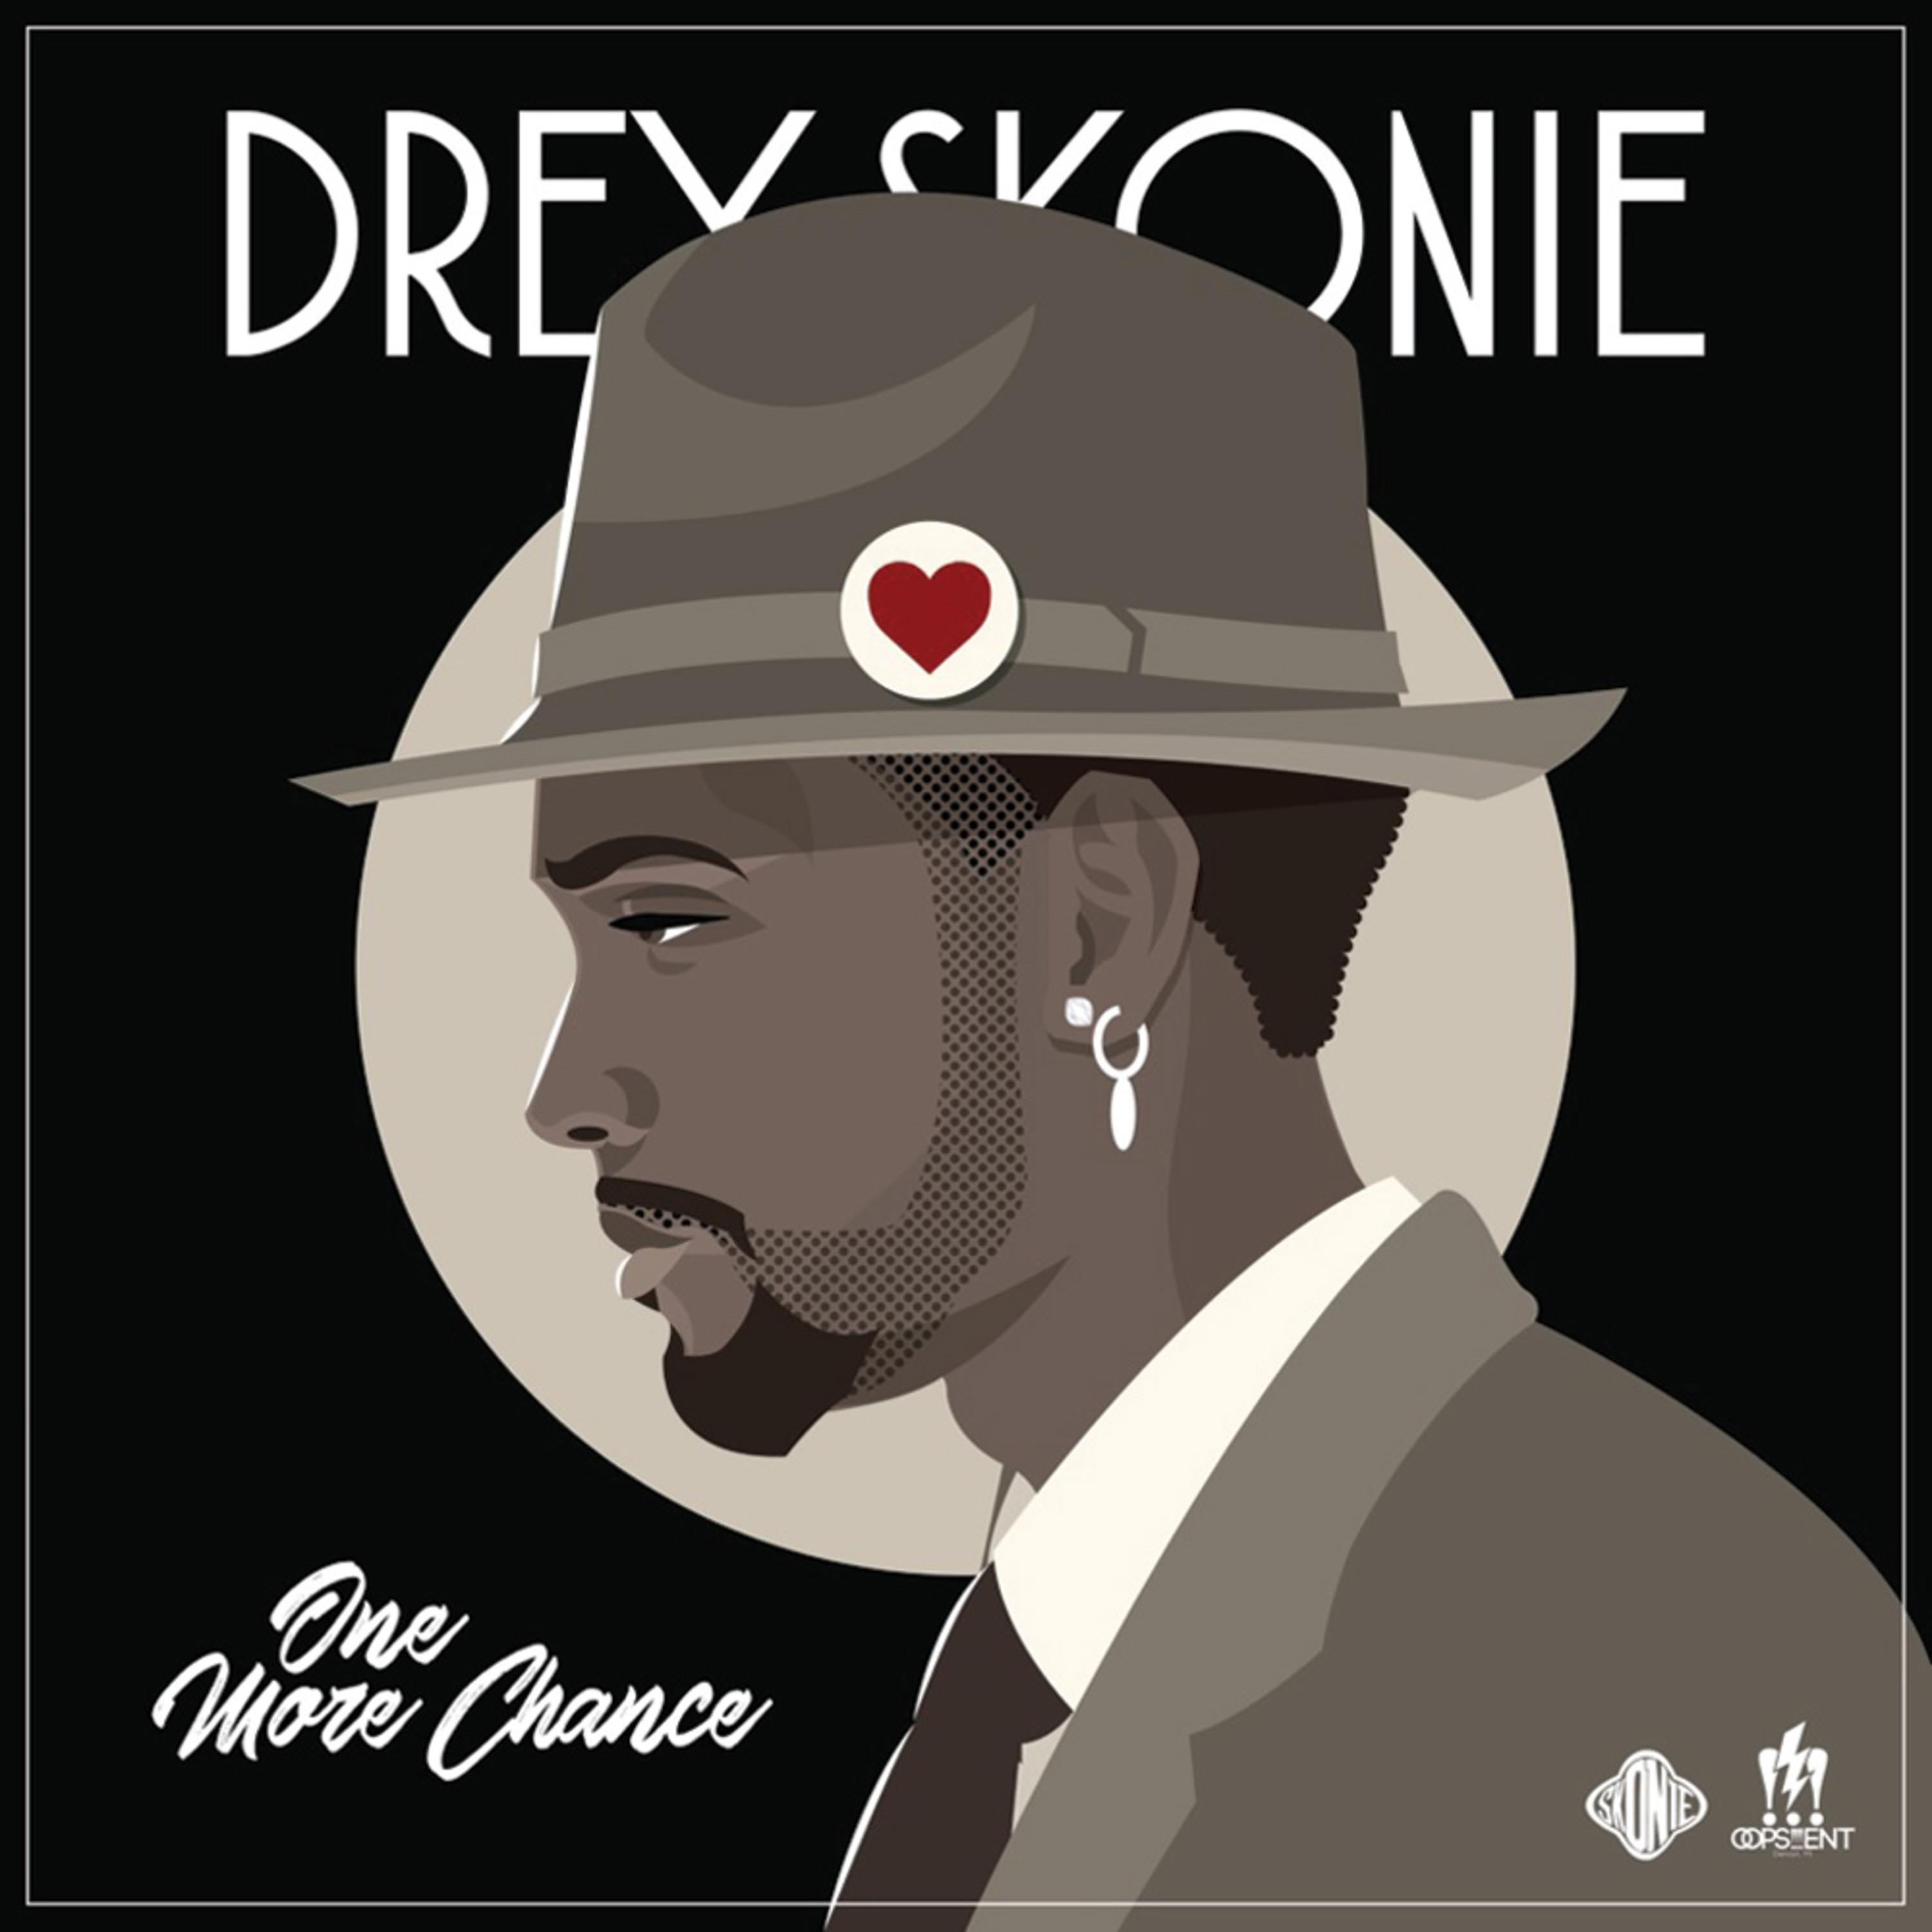 Drey Skonie - One More Chance